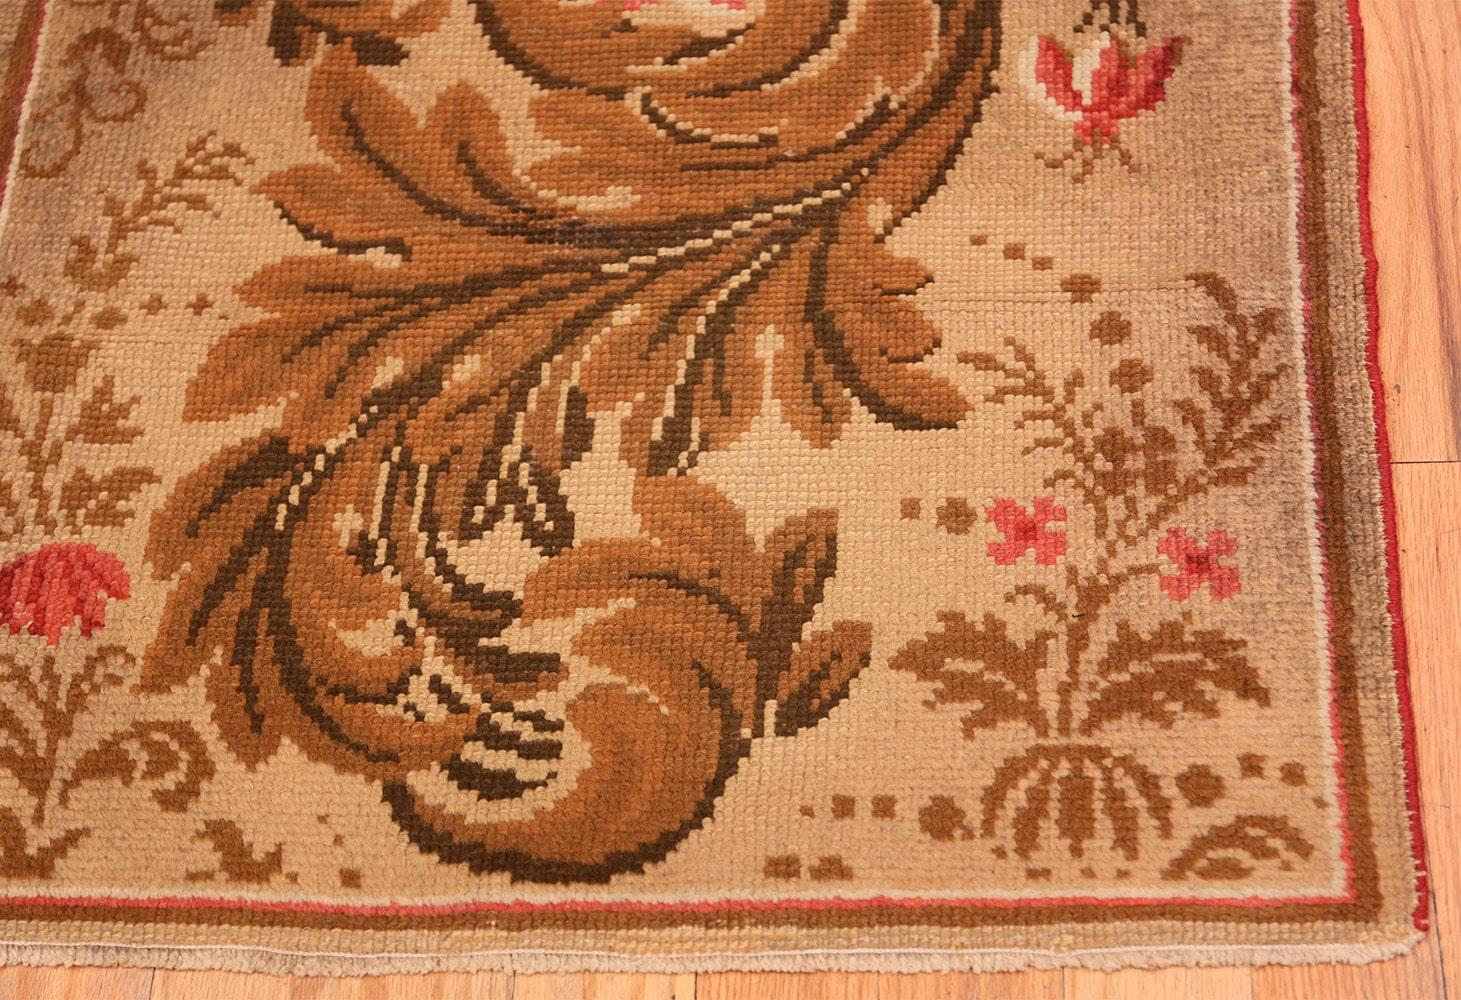 Antiker englischer Teppich, Herkunftsland: England, Datum ca. Ende 19. Jahrhundert. Größe: 0,76 m x 1,9 m (2 ft 6 in x 6 ft 3 in). 

